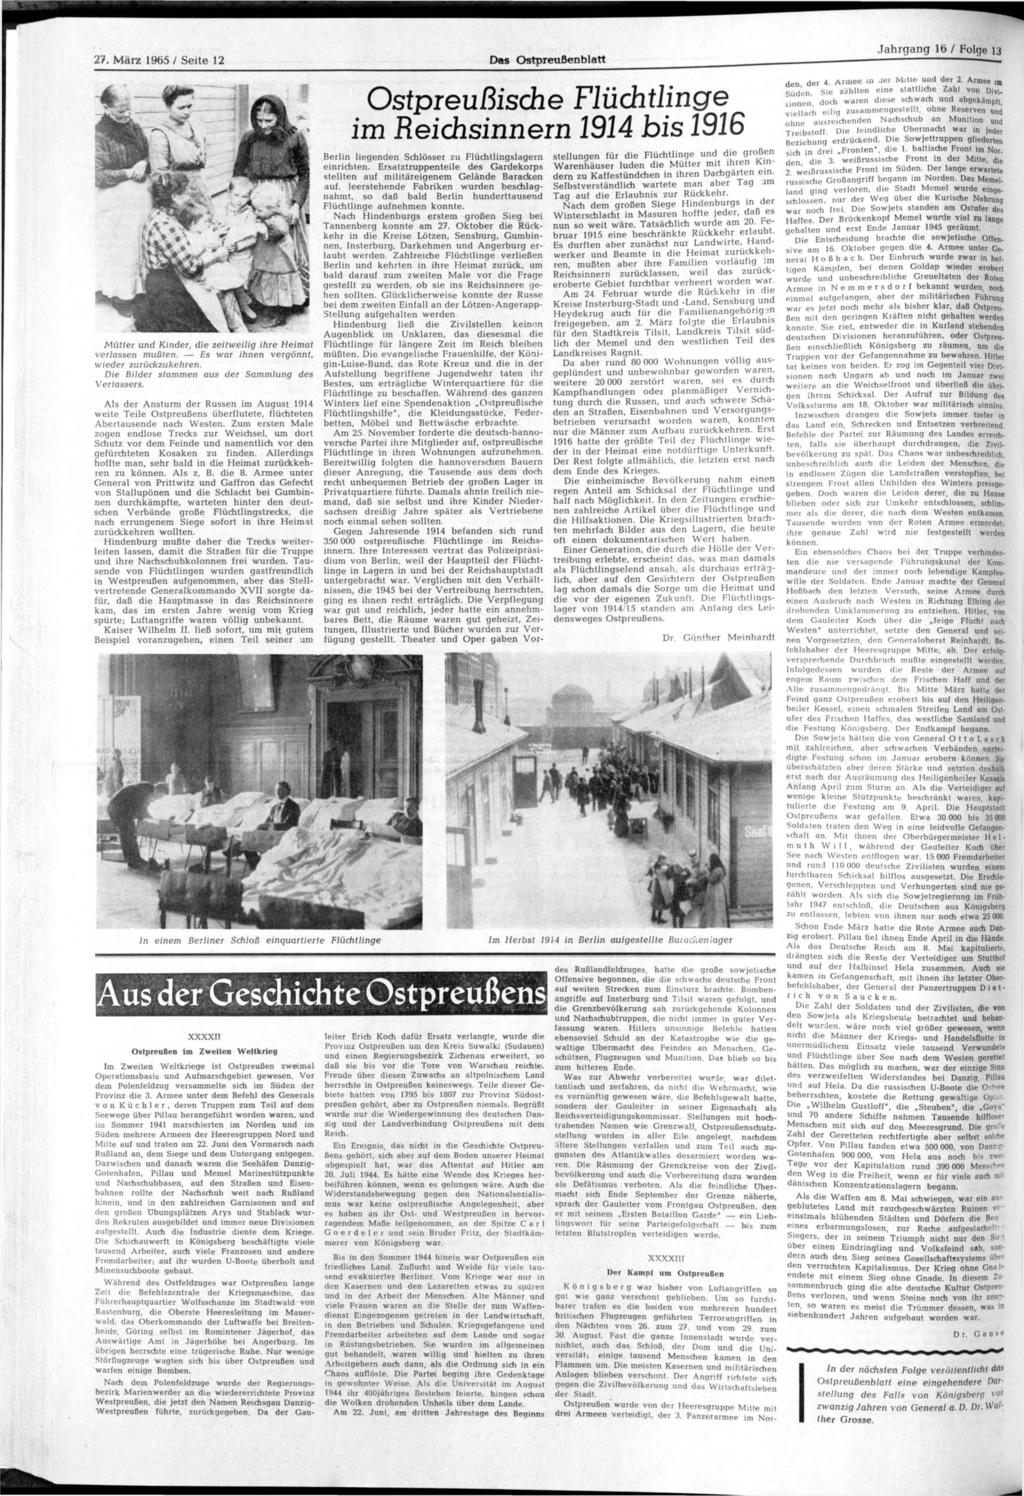 27. März 1965 / Seite 12 Das Ostpreußenblatt Jahrgang lö / Folge 13 Mütter und Kinder, die zeitweilig ihre Heimat verlassen mußten. Es war ihnen vergönnt, wieder zurückzukehren.